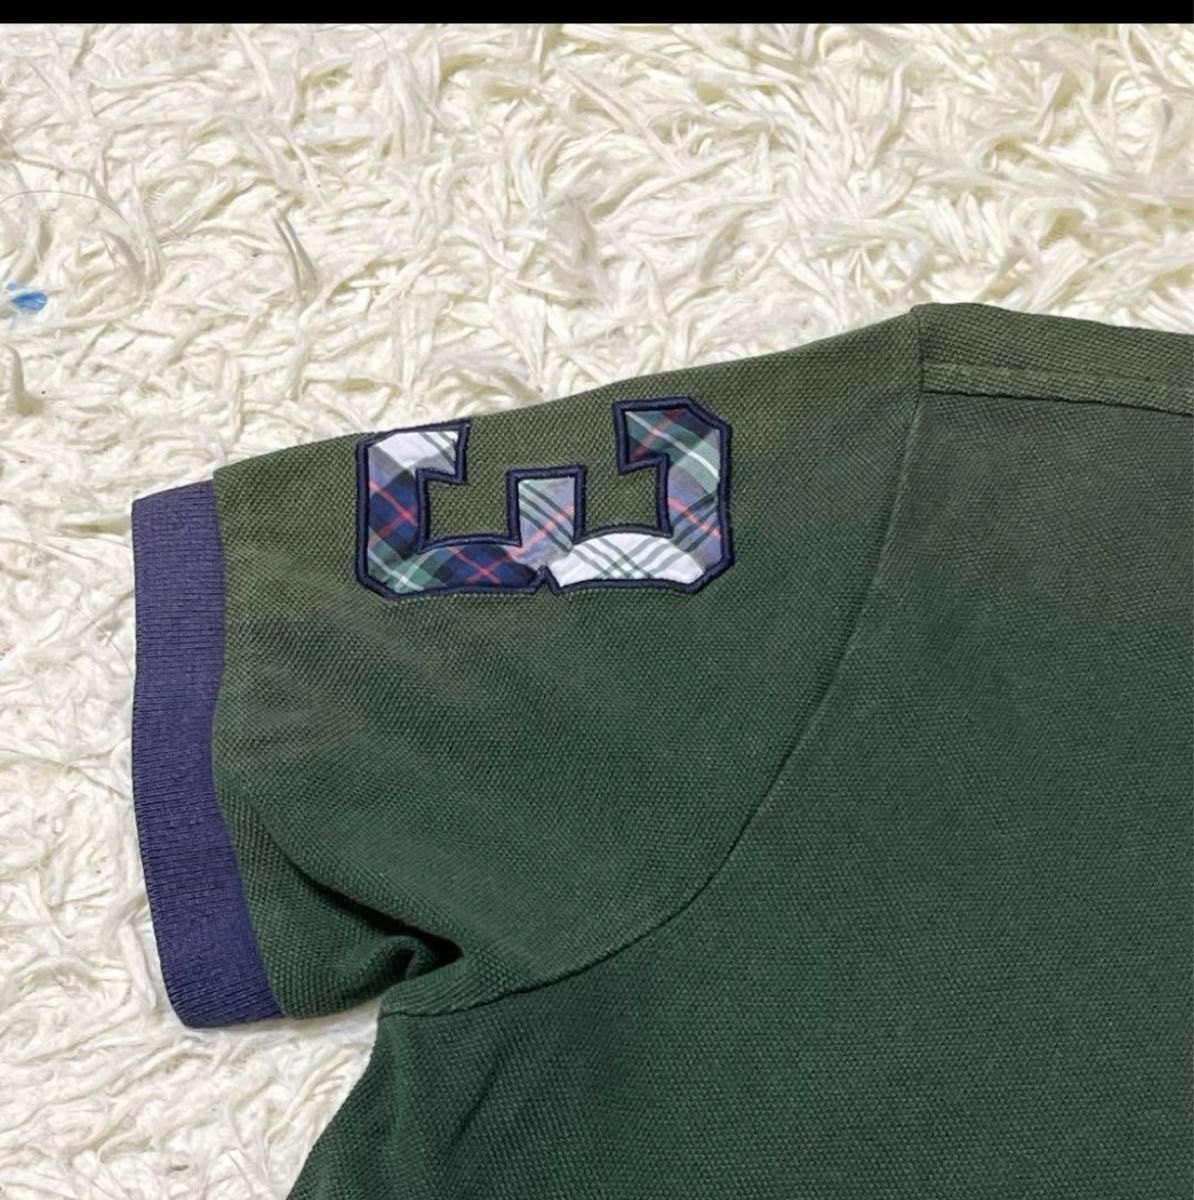 Polo Ralph Lauren ポロラルフローレン ポロシャツ 半袖 デカロゴ 刺繍 バイカラー 綿 メンズ 緑 S